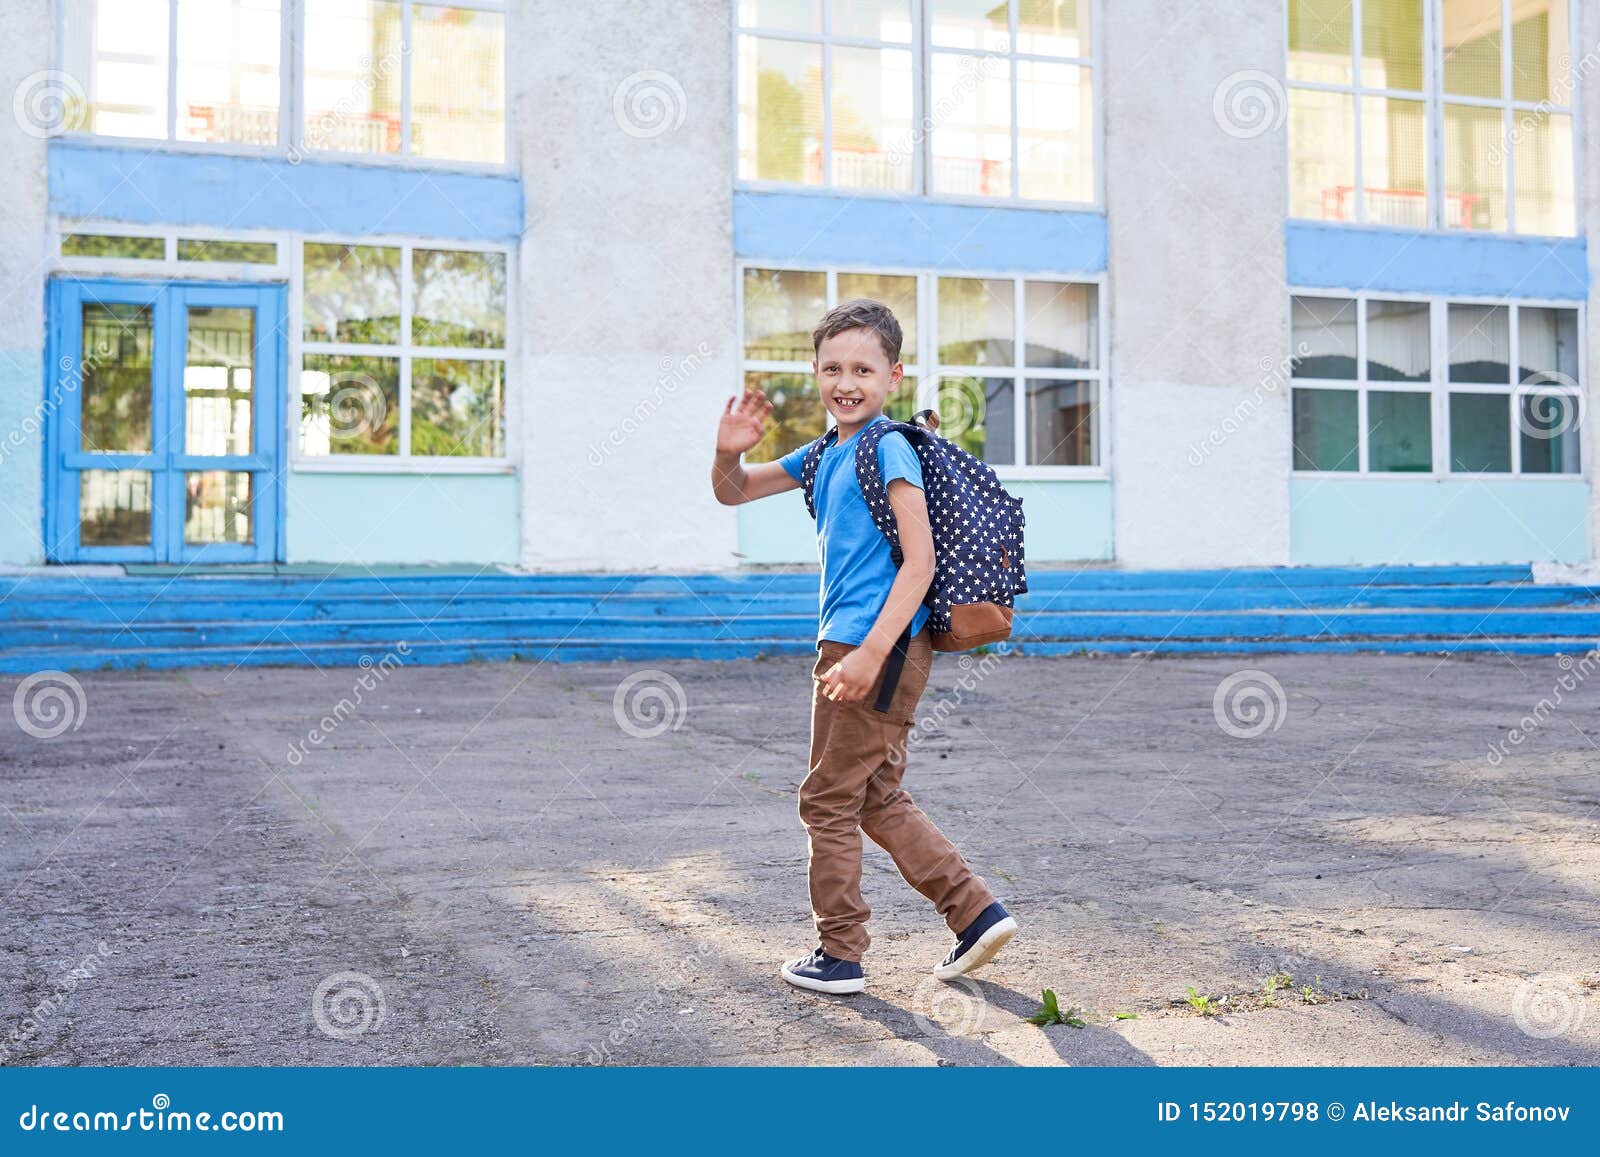 Ученик зашел на урок. Мальчик идет в школу. Мальчик который ходит в школу. Школьники идут в школу. Мальчишка идёт в школу.